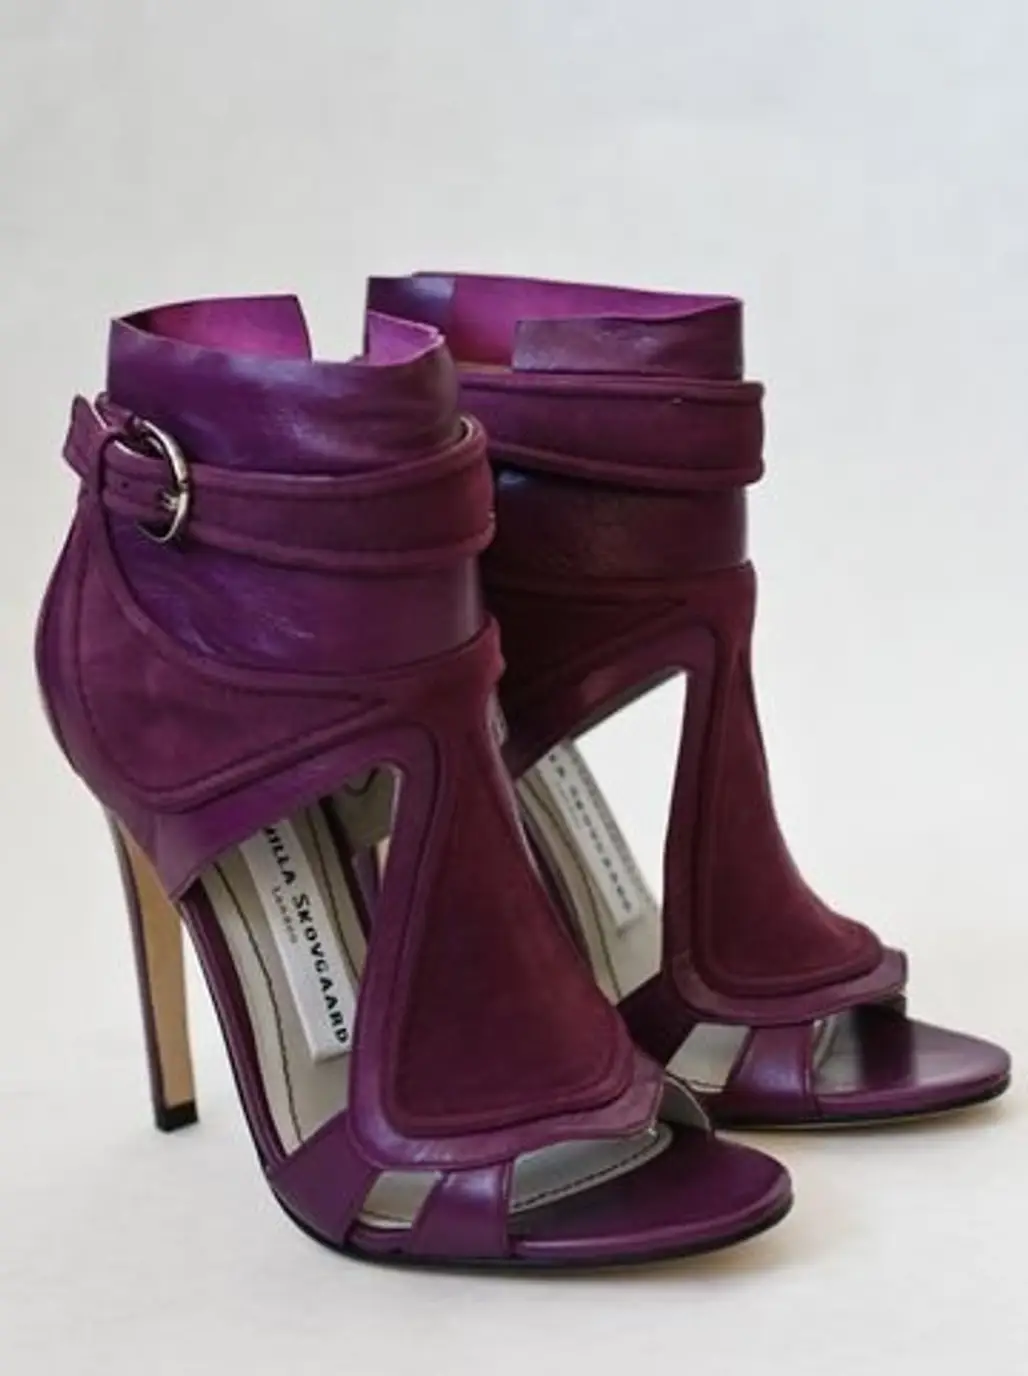 footwear,pink,purple,violet,maroon,